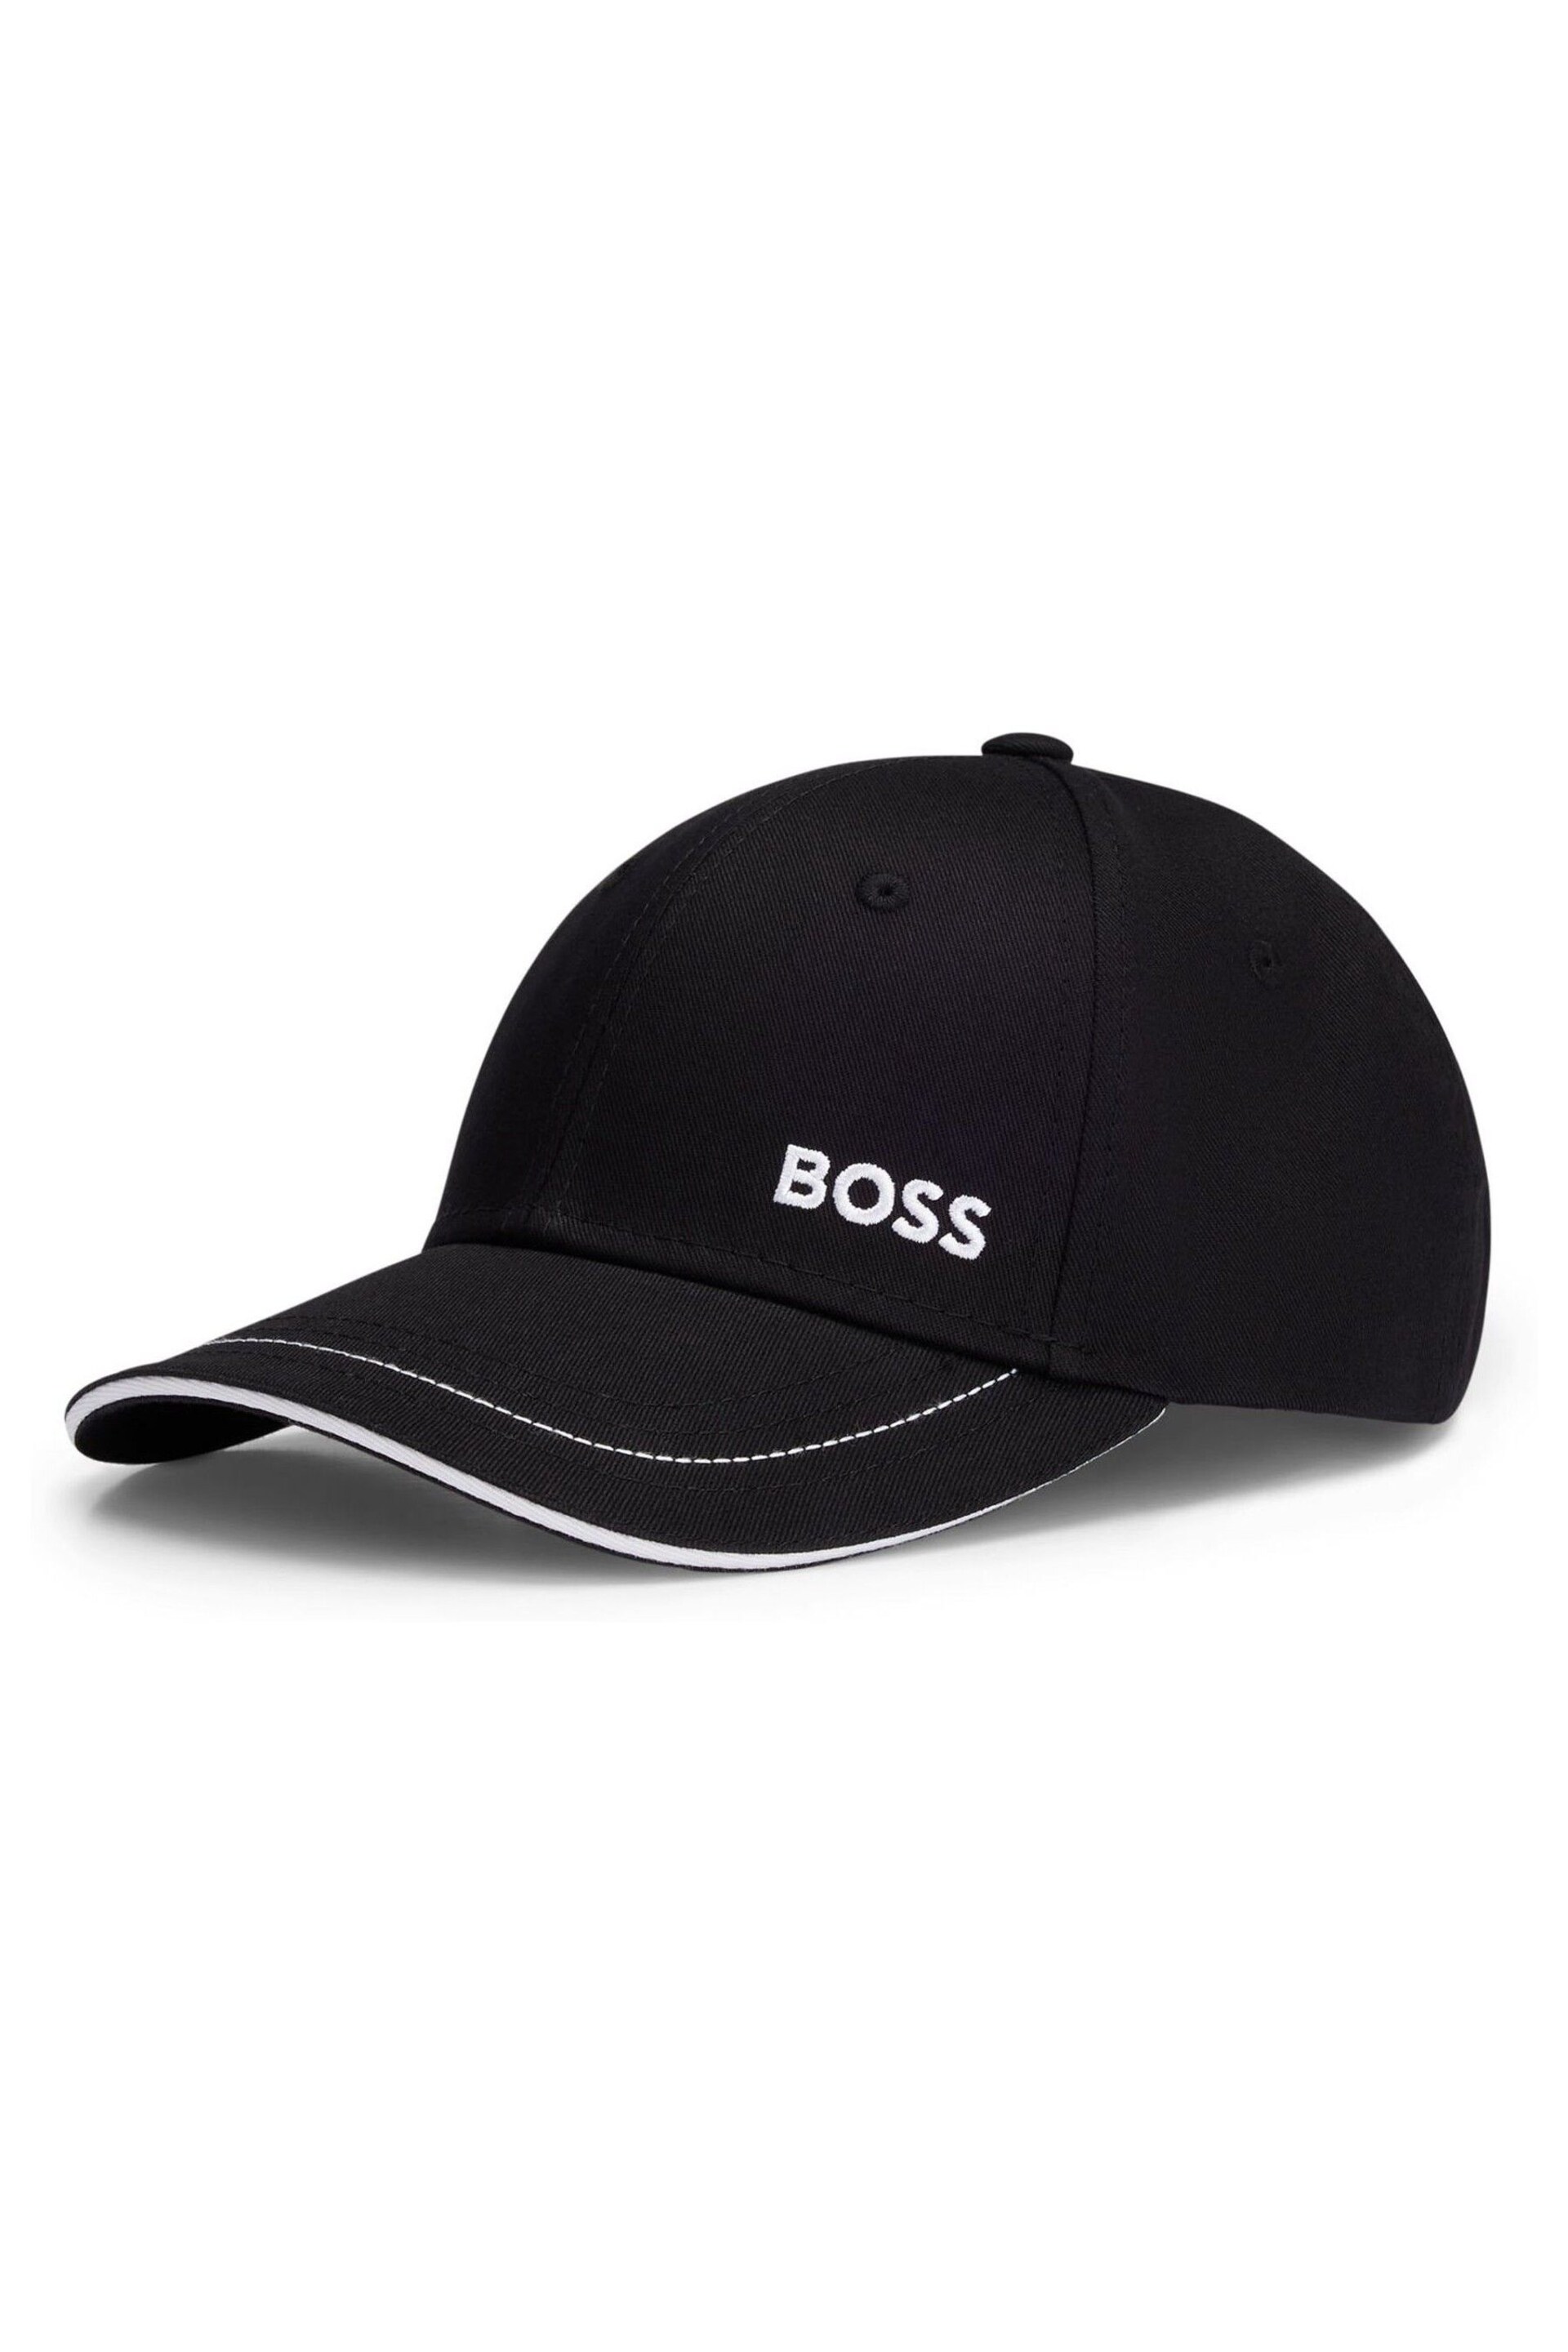 BOSS Black Printed Logo Cap - Image 4 of 5